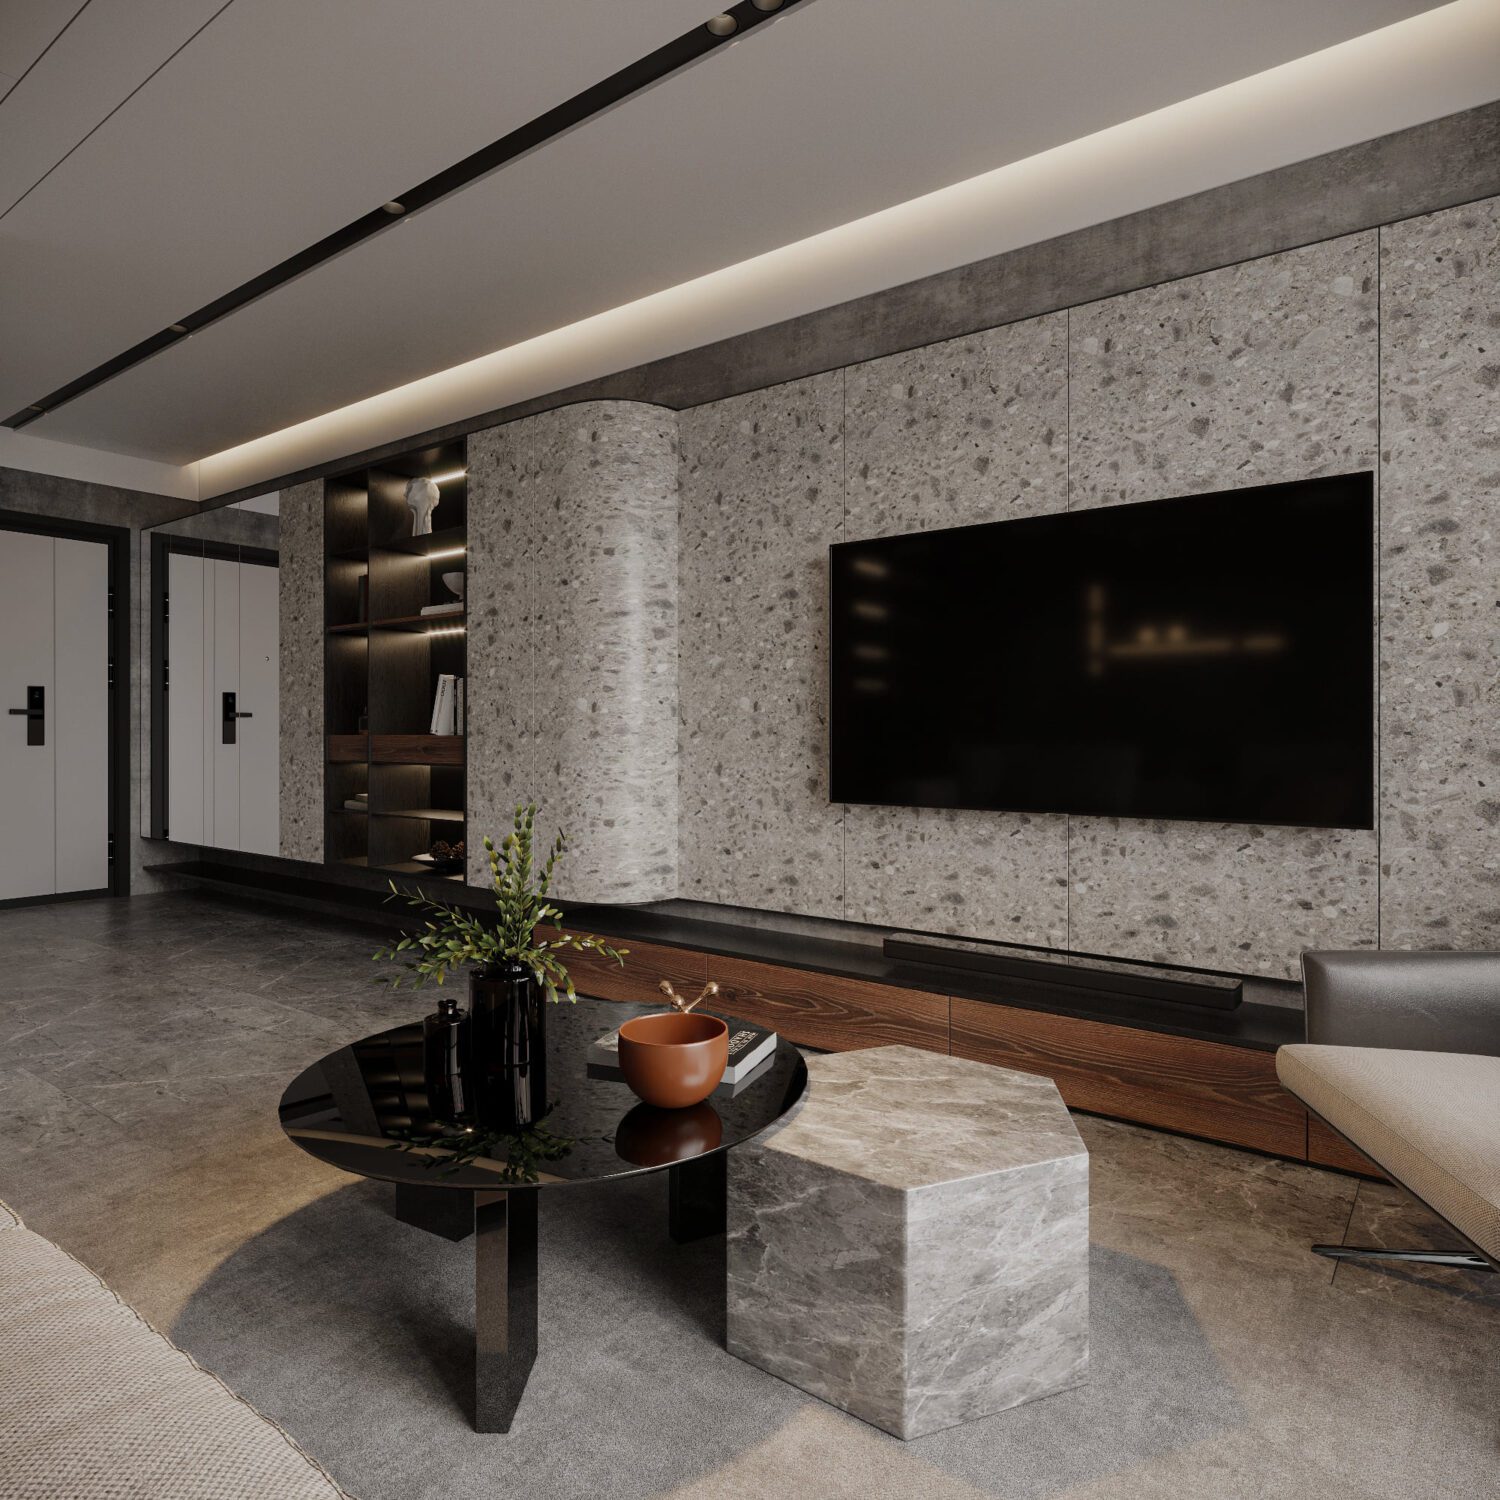 Free 3D Tv-Cabinet Models free living room 3d models for download